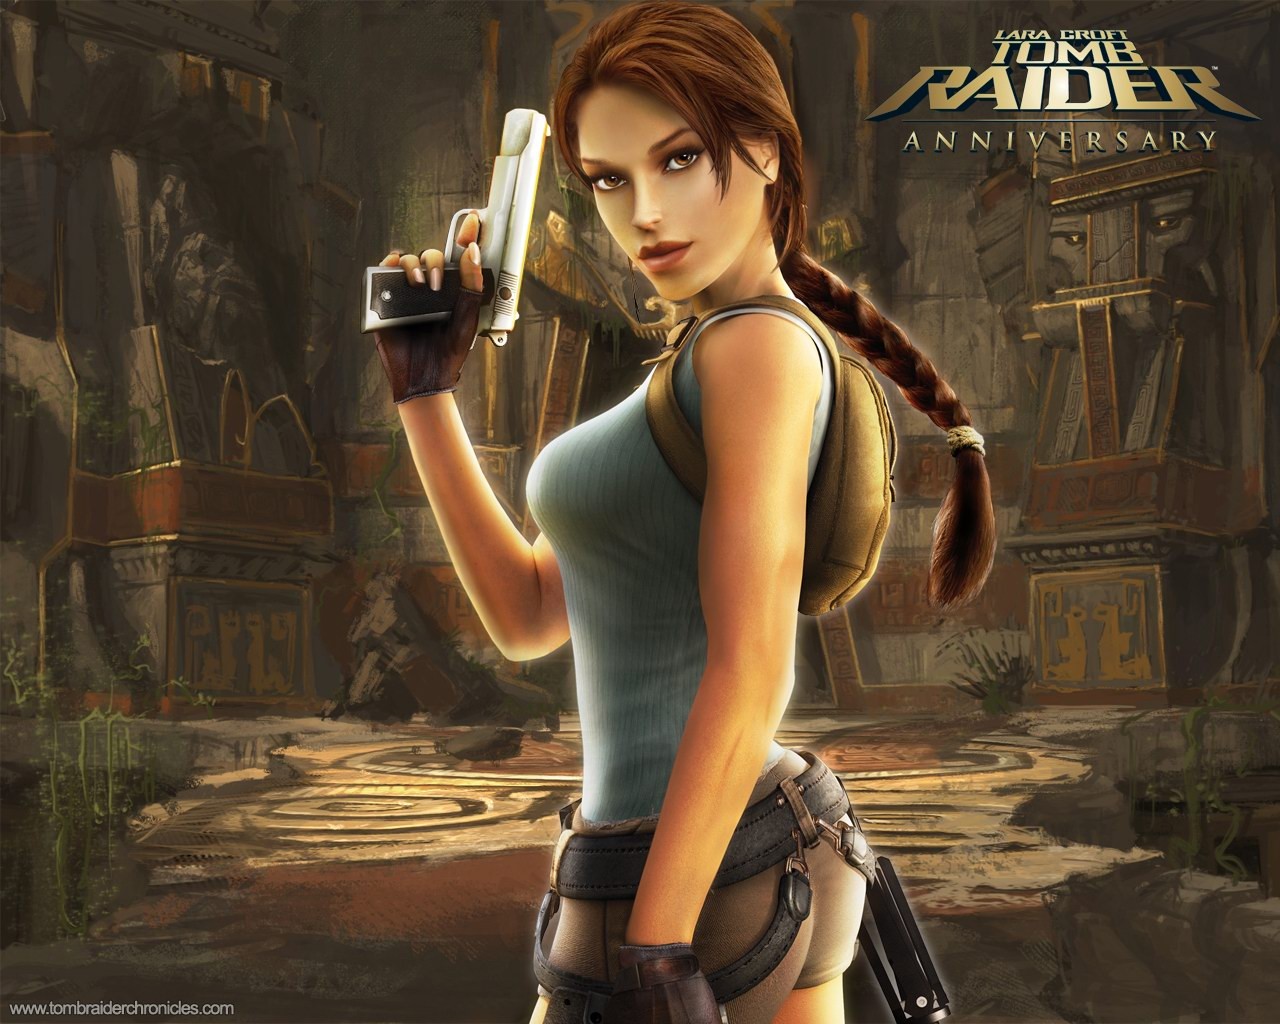 Lara Croft Tomb Raider 10th Anniversary Wallpaper #14 - 1280x1024